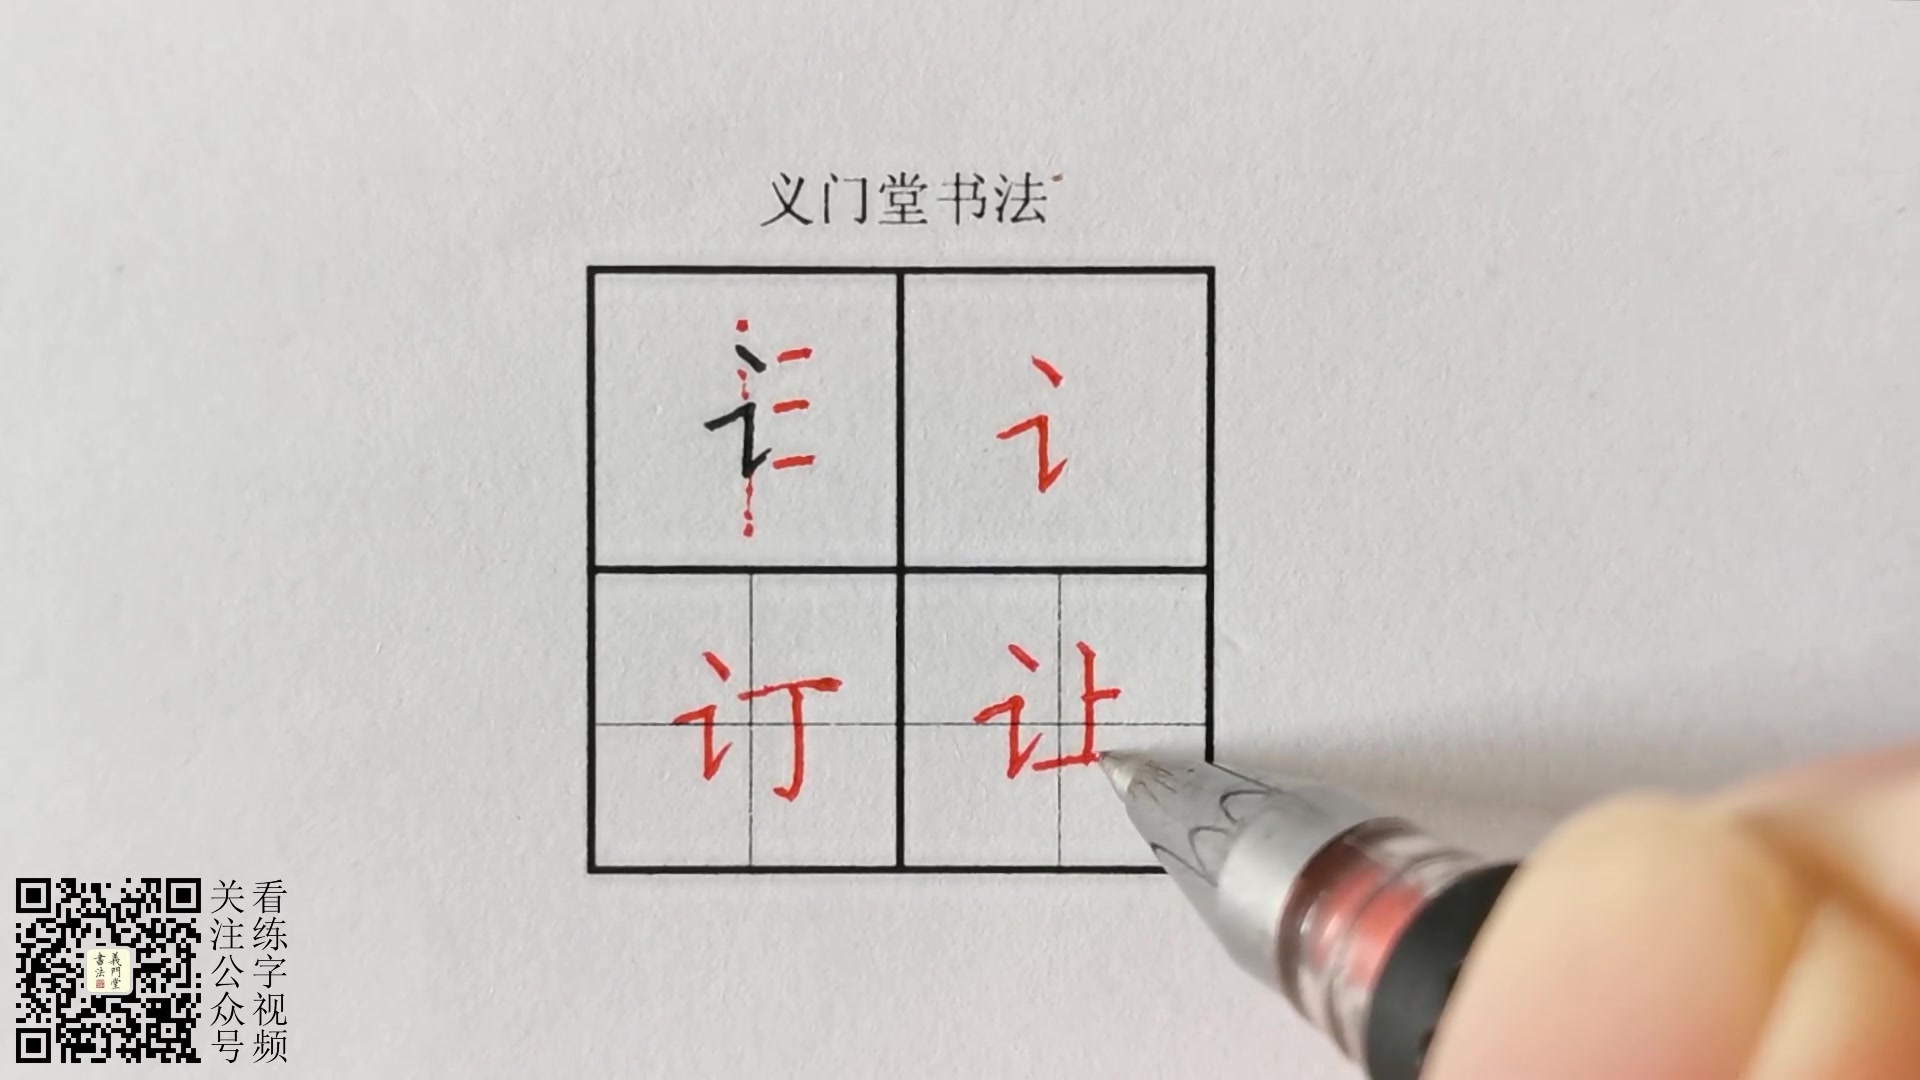 【练字视频】硬笔书法写字教程:楷书偏旁部首